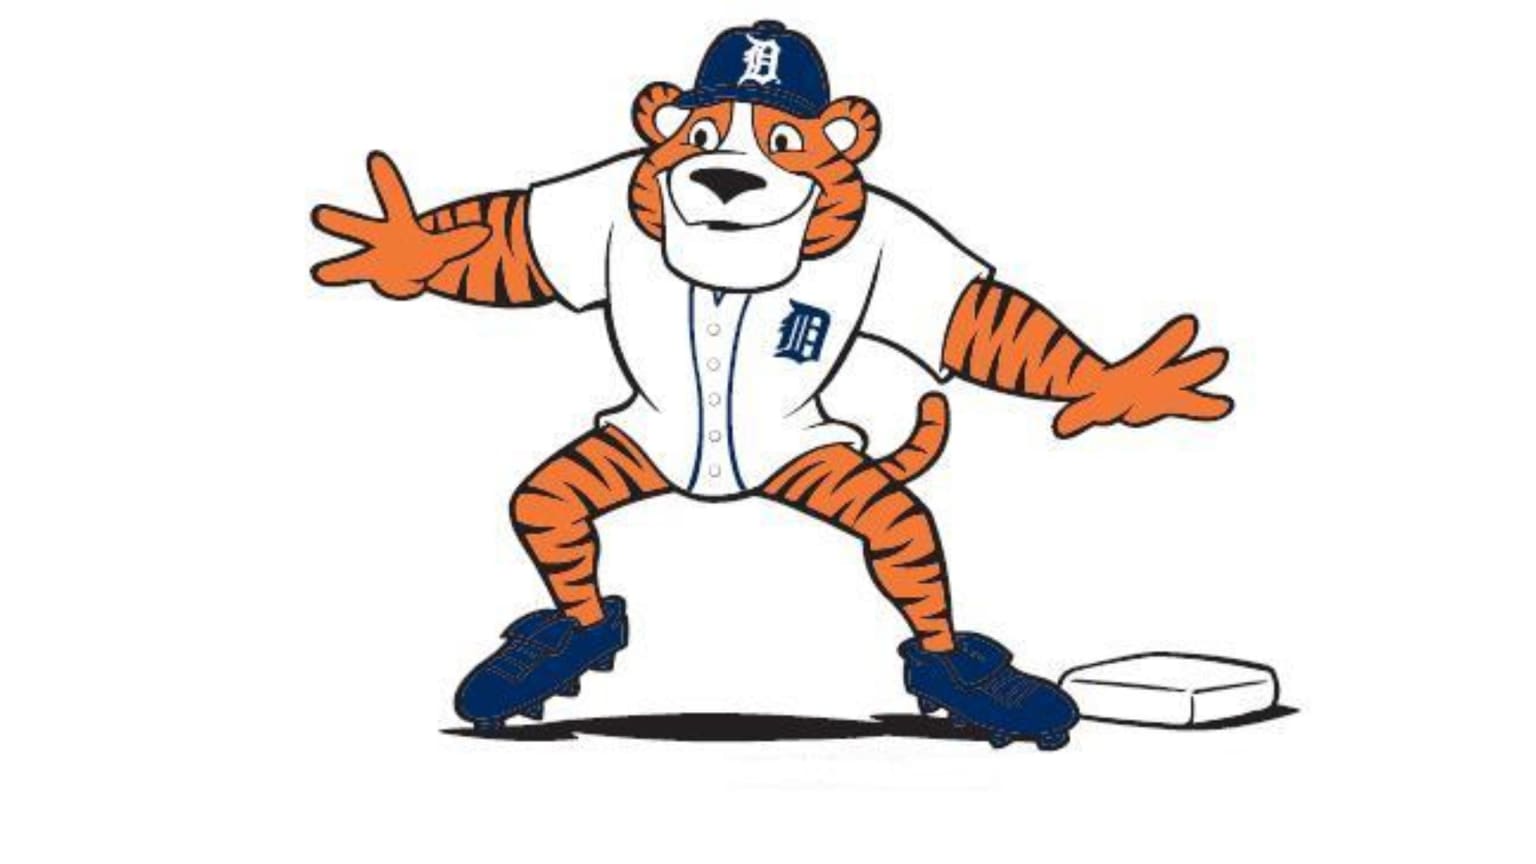 art detroit tigers mascot